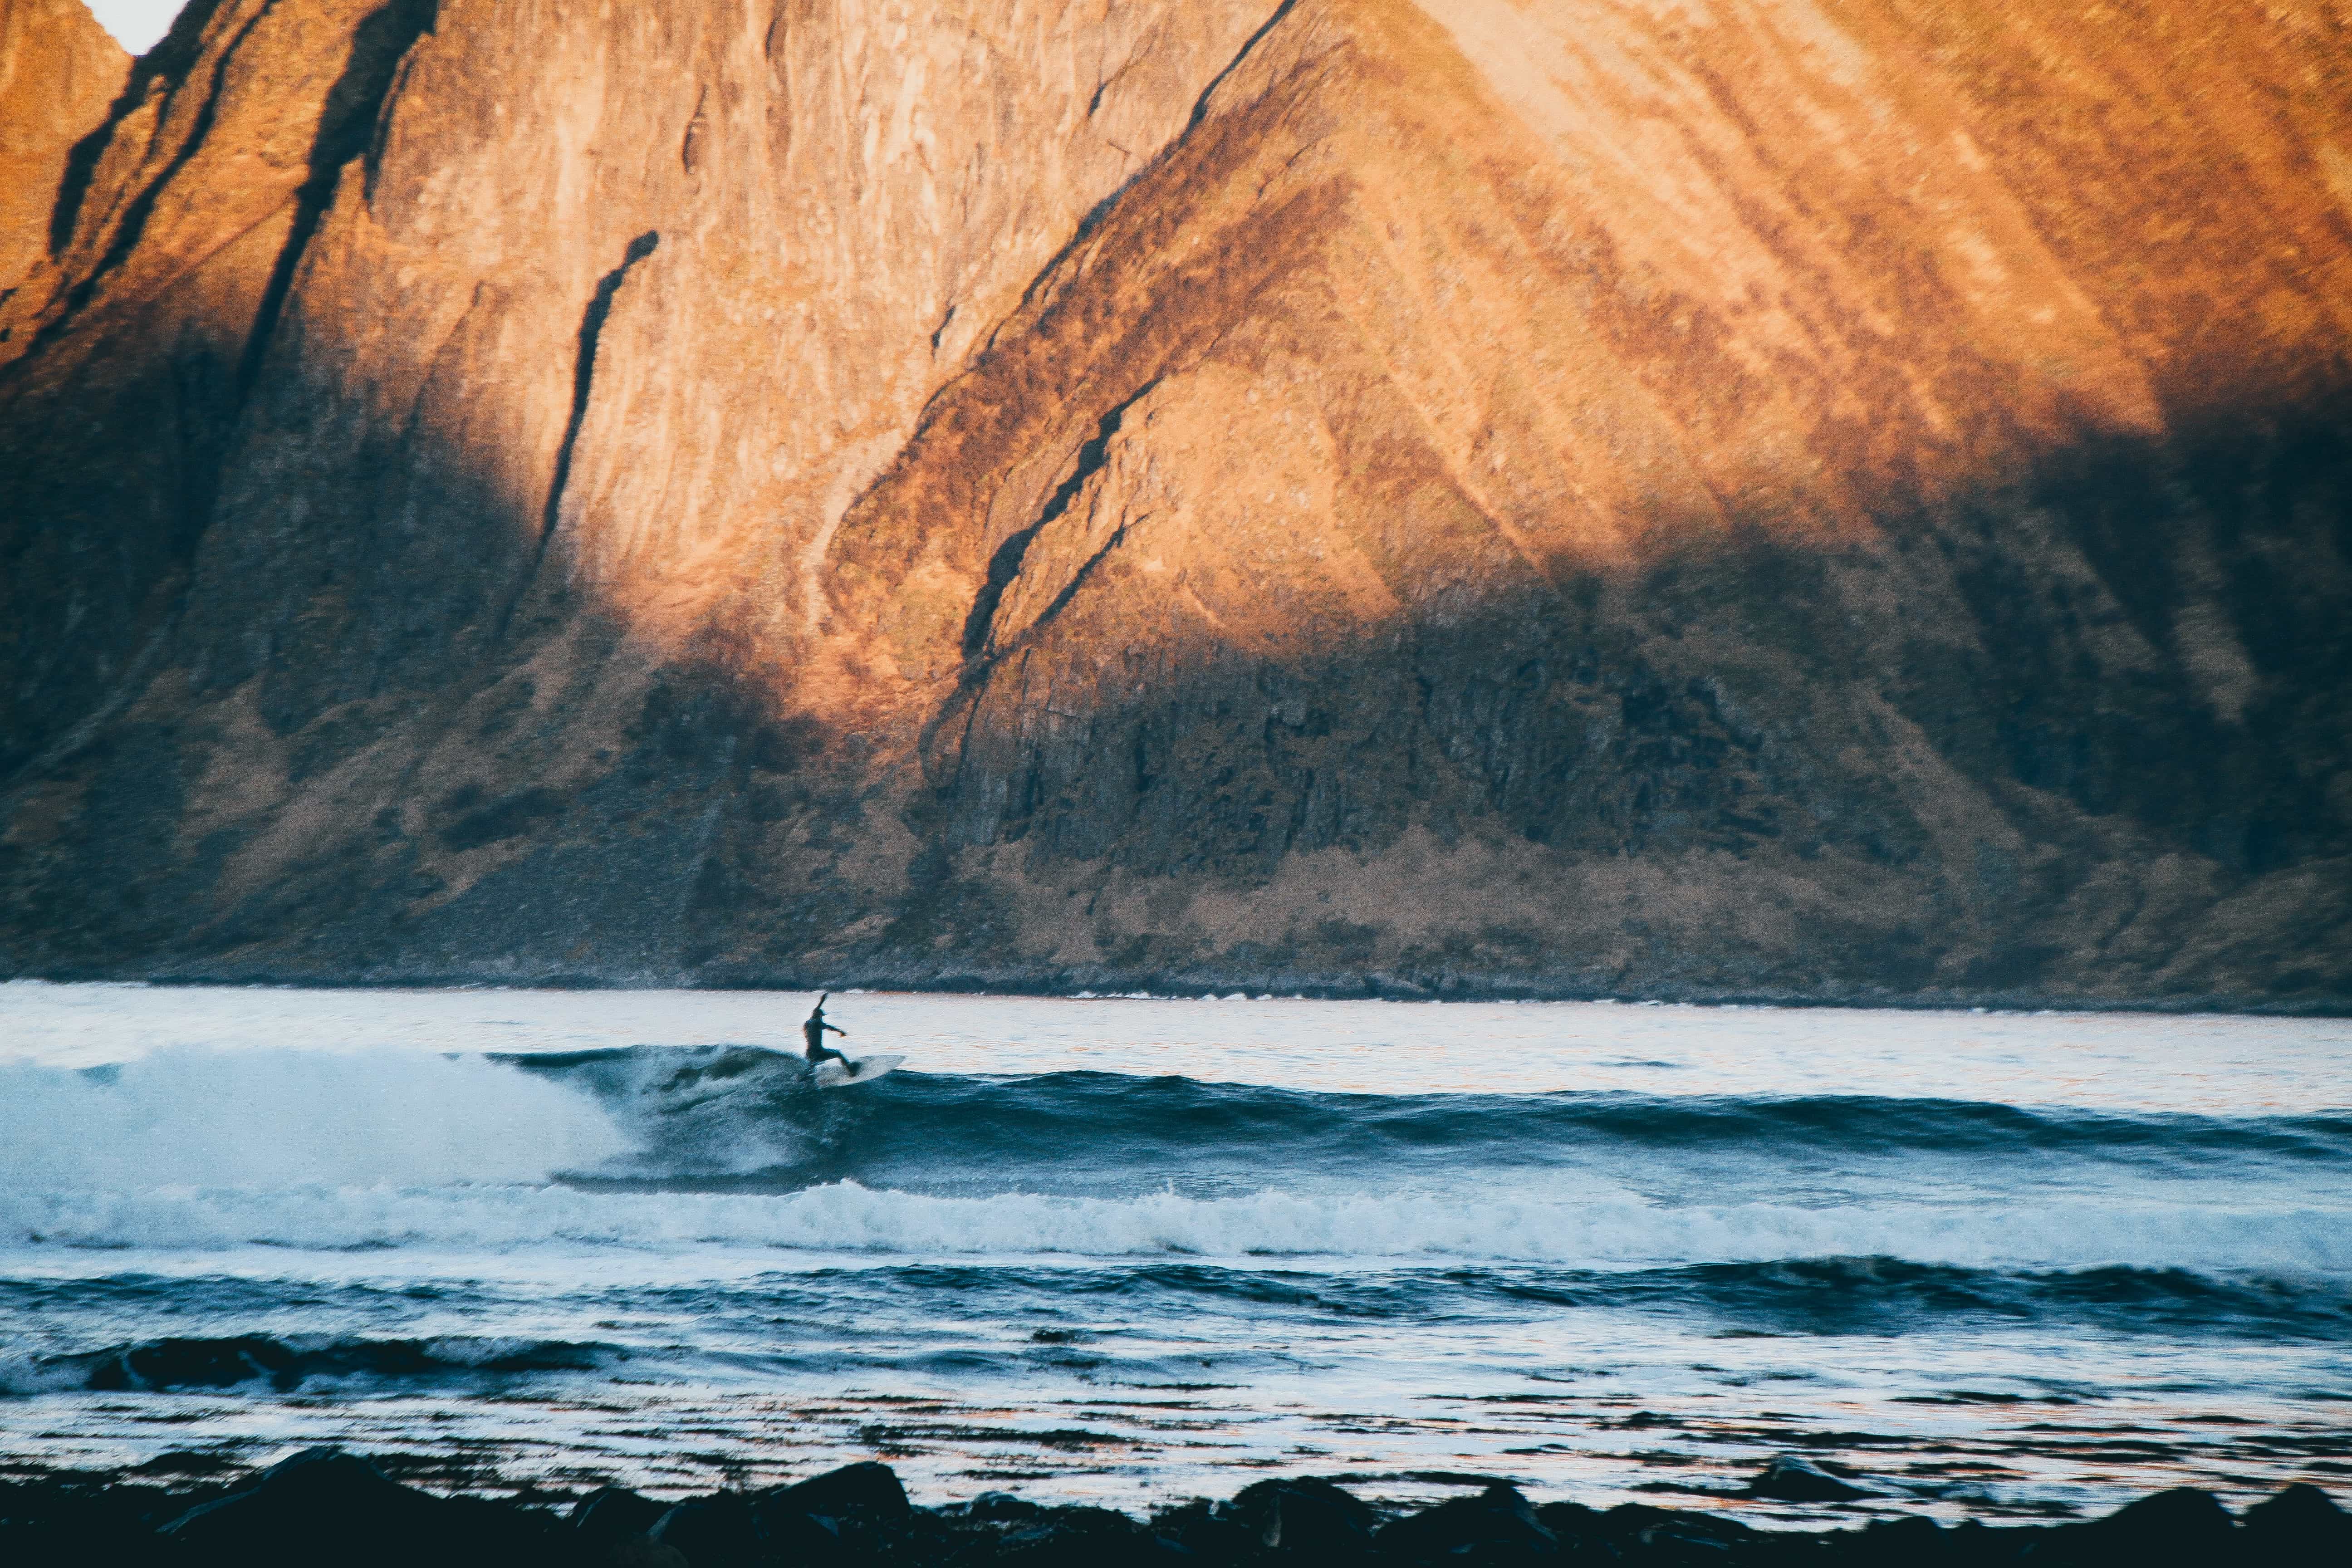 Ivar Fugle Nordhaug - Tatt idag 12.11.17 en hemmelig plass i nord-norge. Surfer: Lorentz Bloch haugland (instagram: @lorentzbh). Min insta: @ivarfn